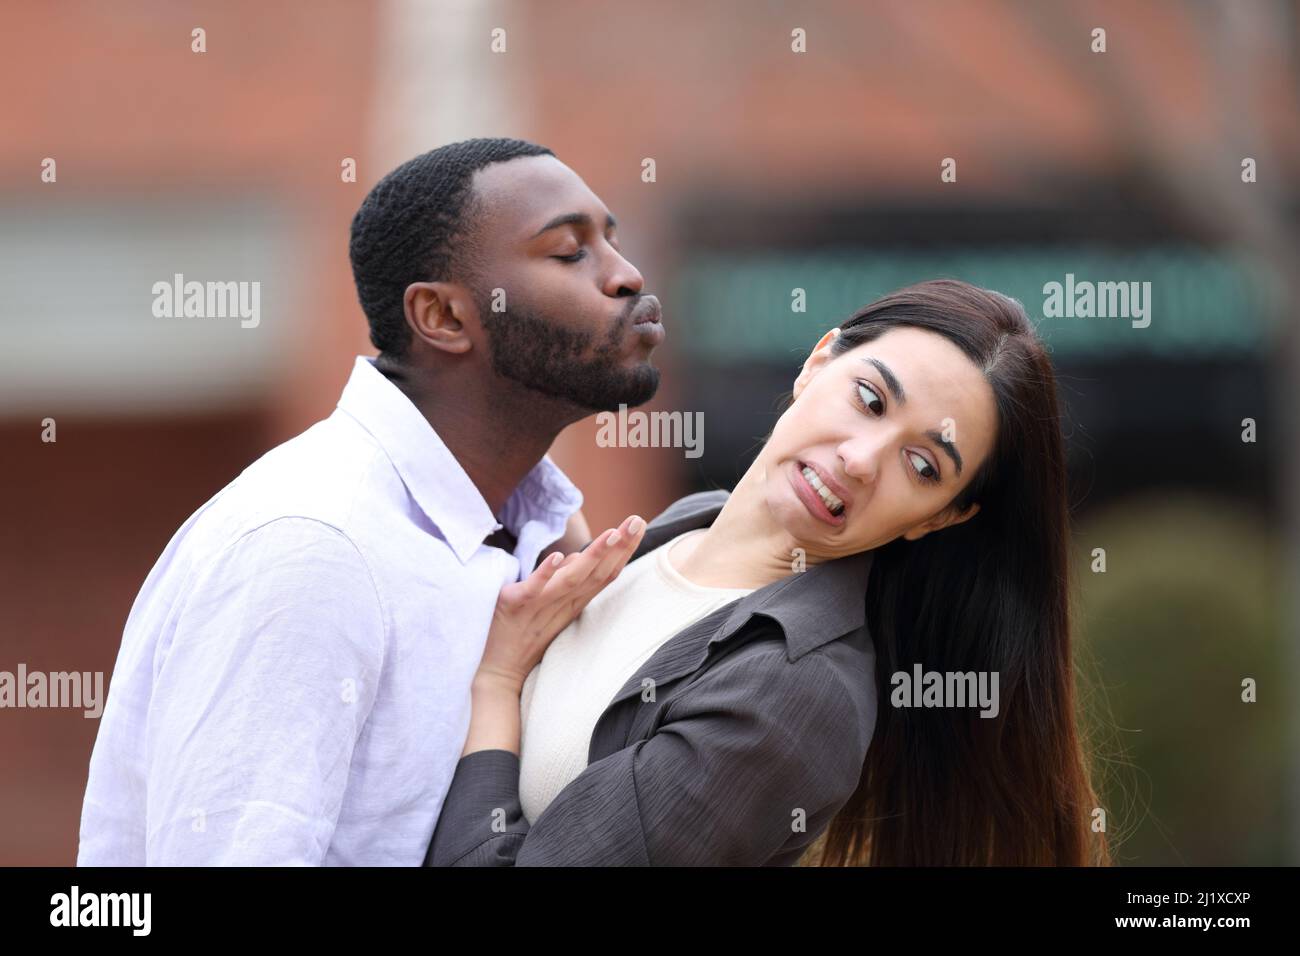 Uomo con pelle nera cercando di baciare una donna caucasica che lo allontana per strada Foto Stock